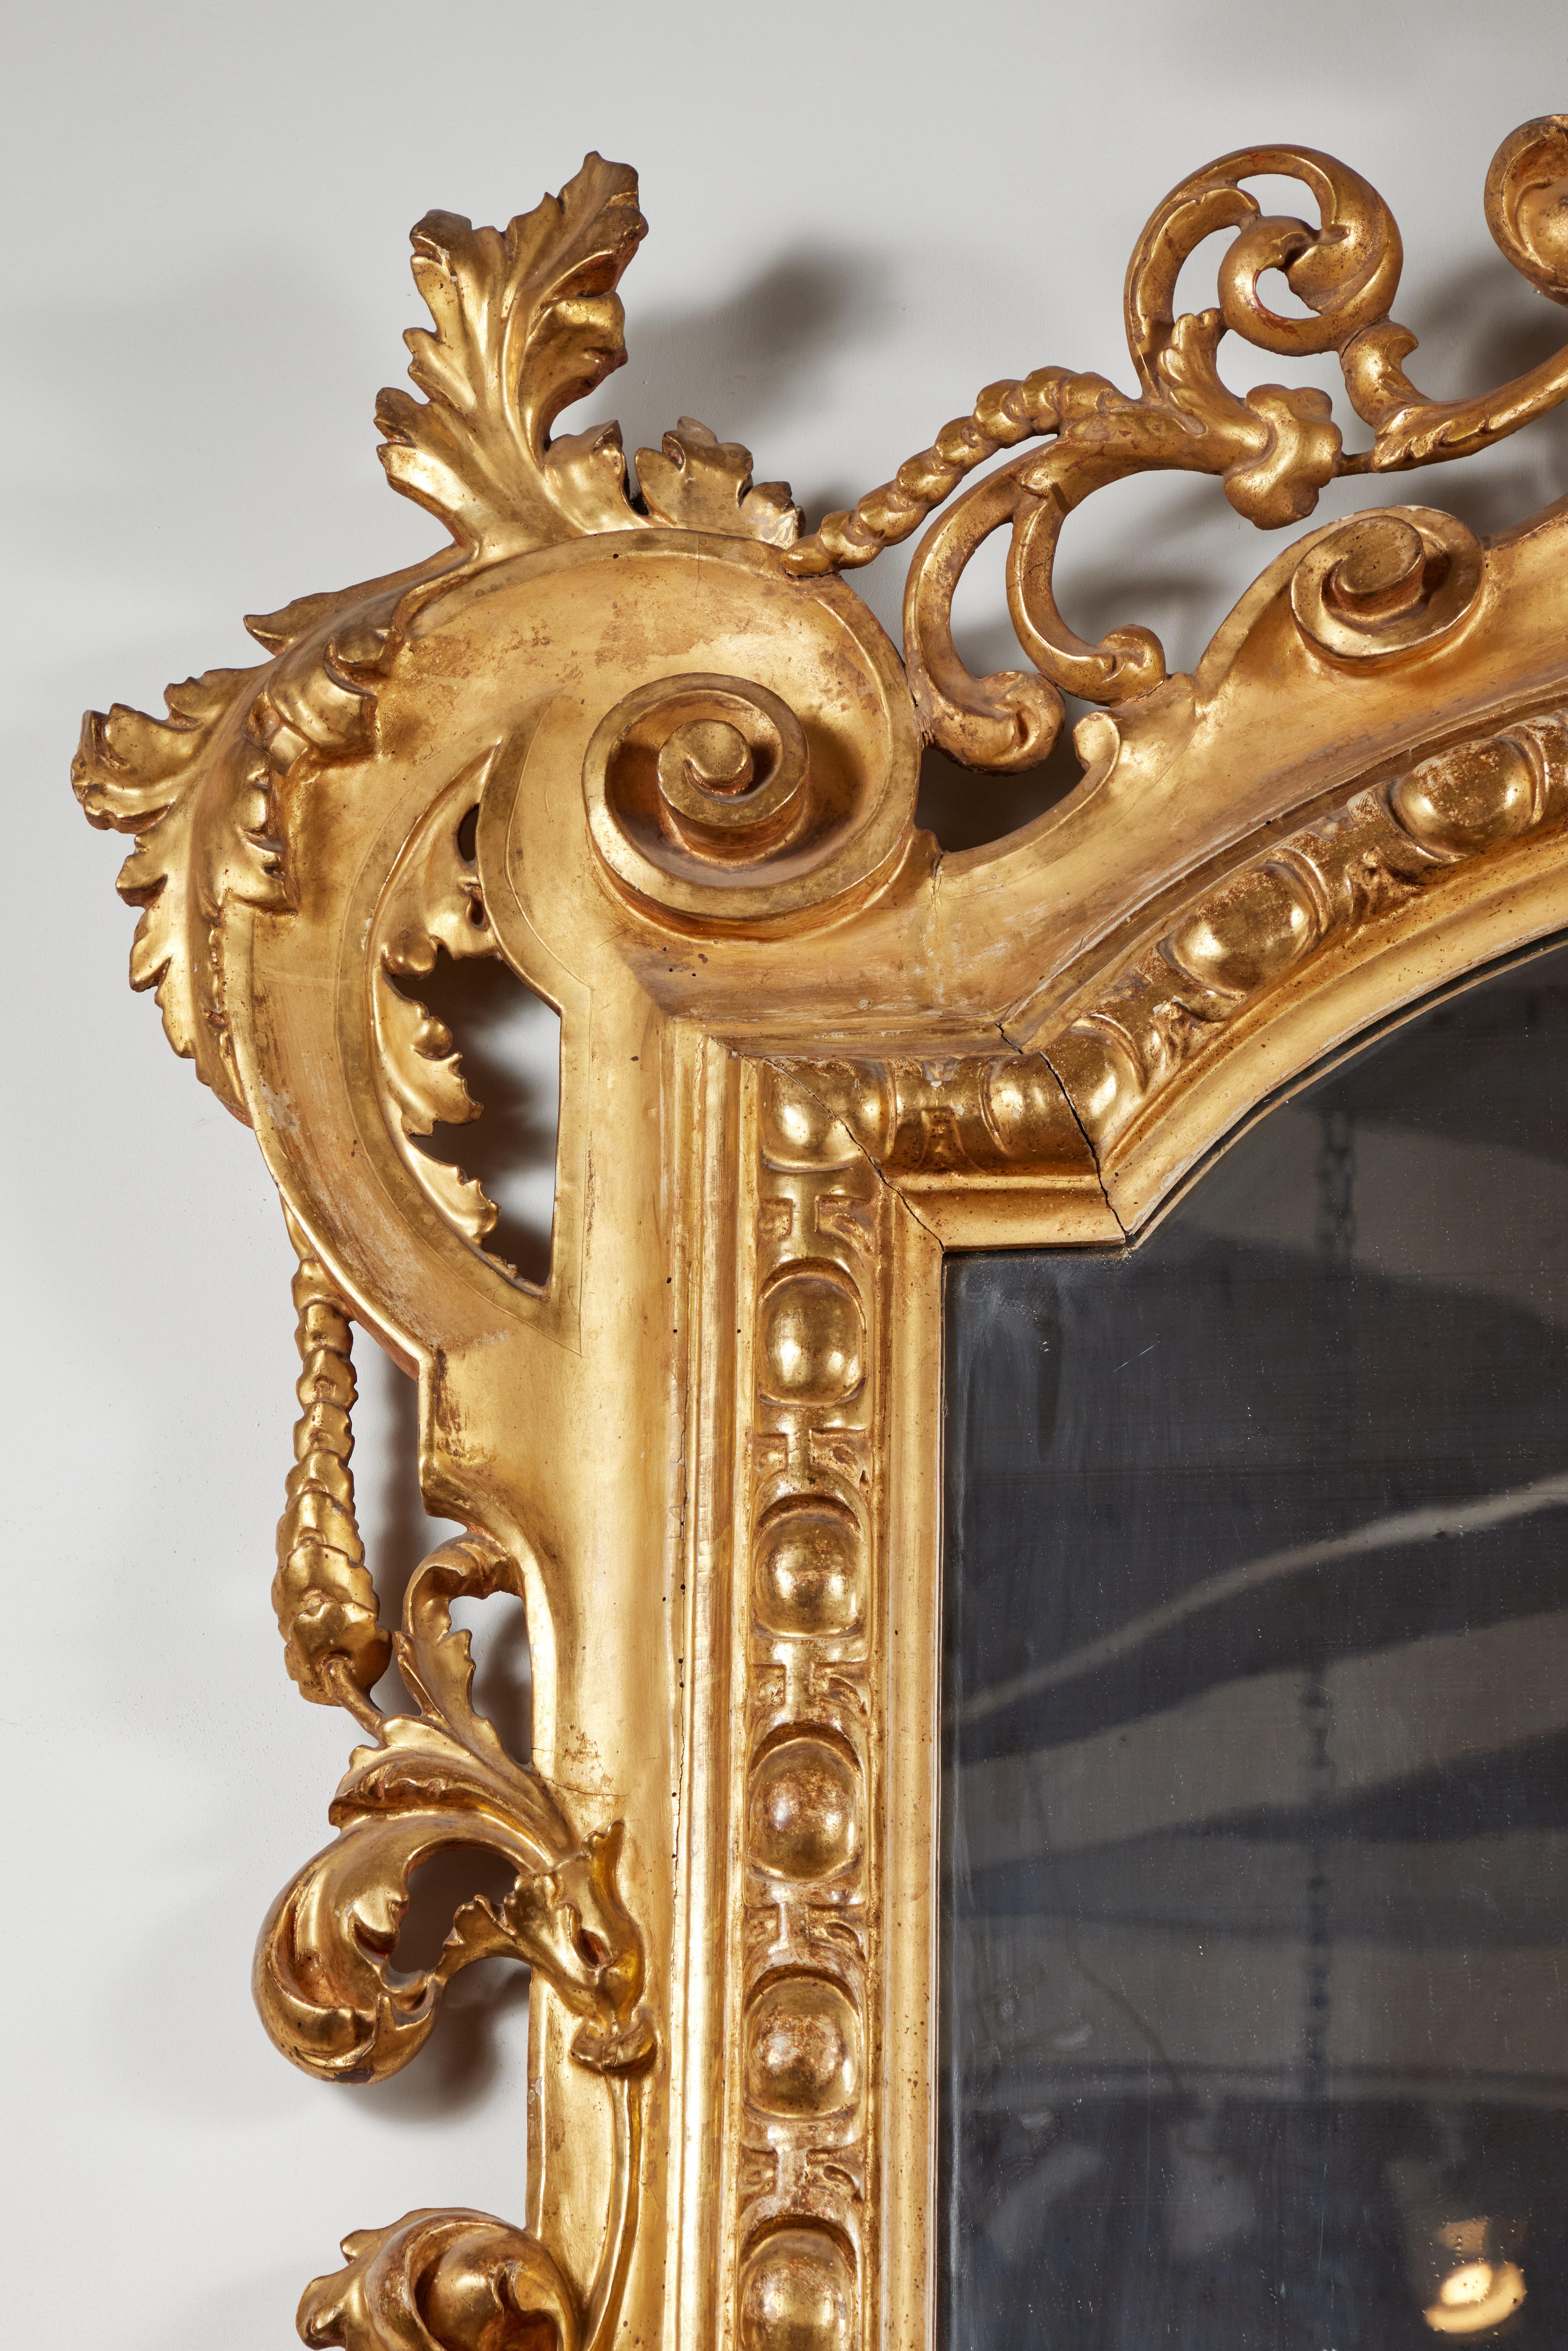 Miroir de grande taille, datant de 1850, sculpté à la main, recouvert de gesso et doré à l'or fin 22k, provenant d'Italie centrale. Le corps richement sculpté est orné de rinceaux feuillus et de grappes de fleurs, et s'élève vers une couronne percée